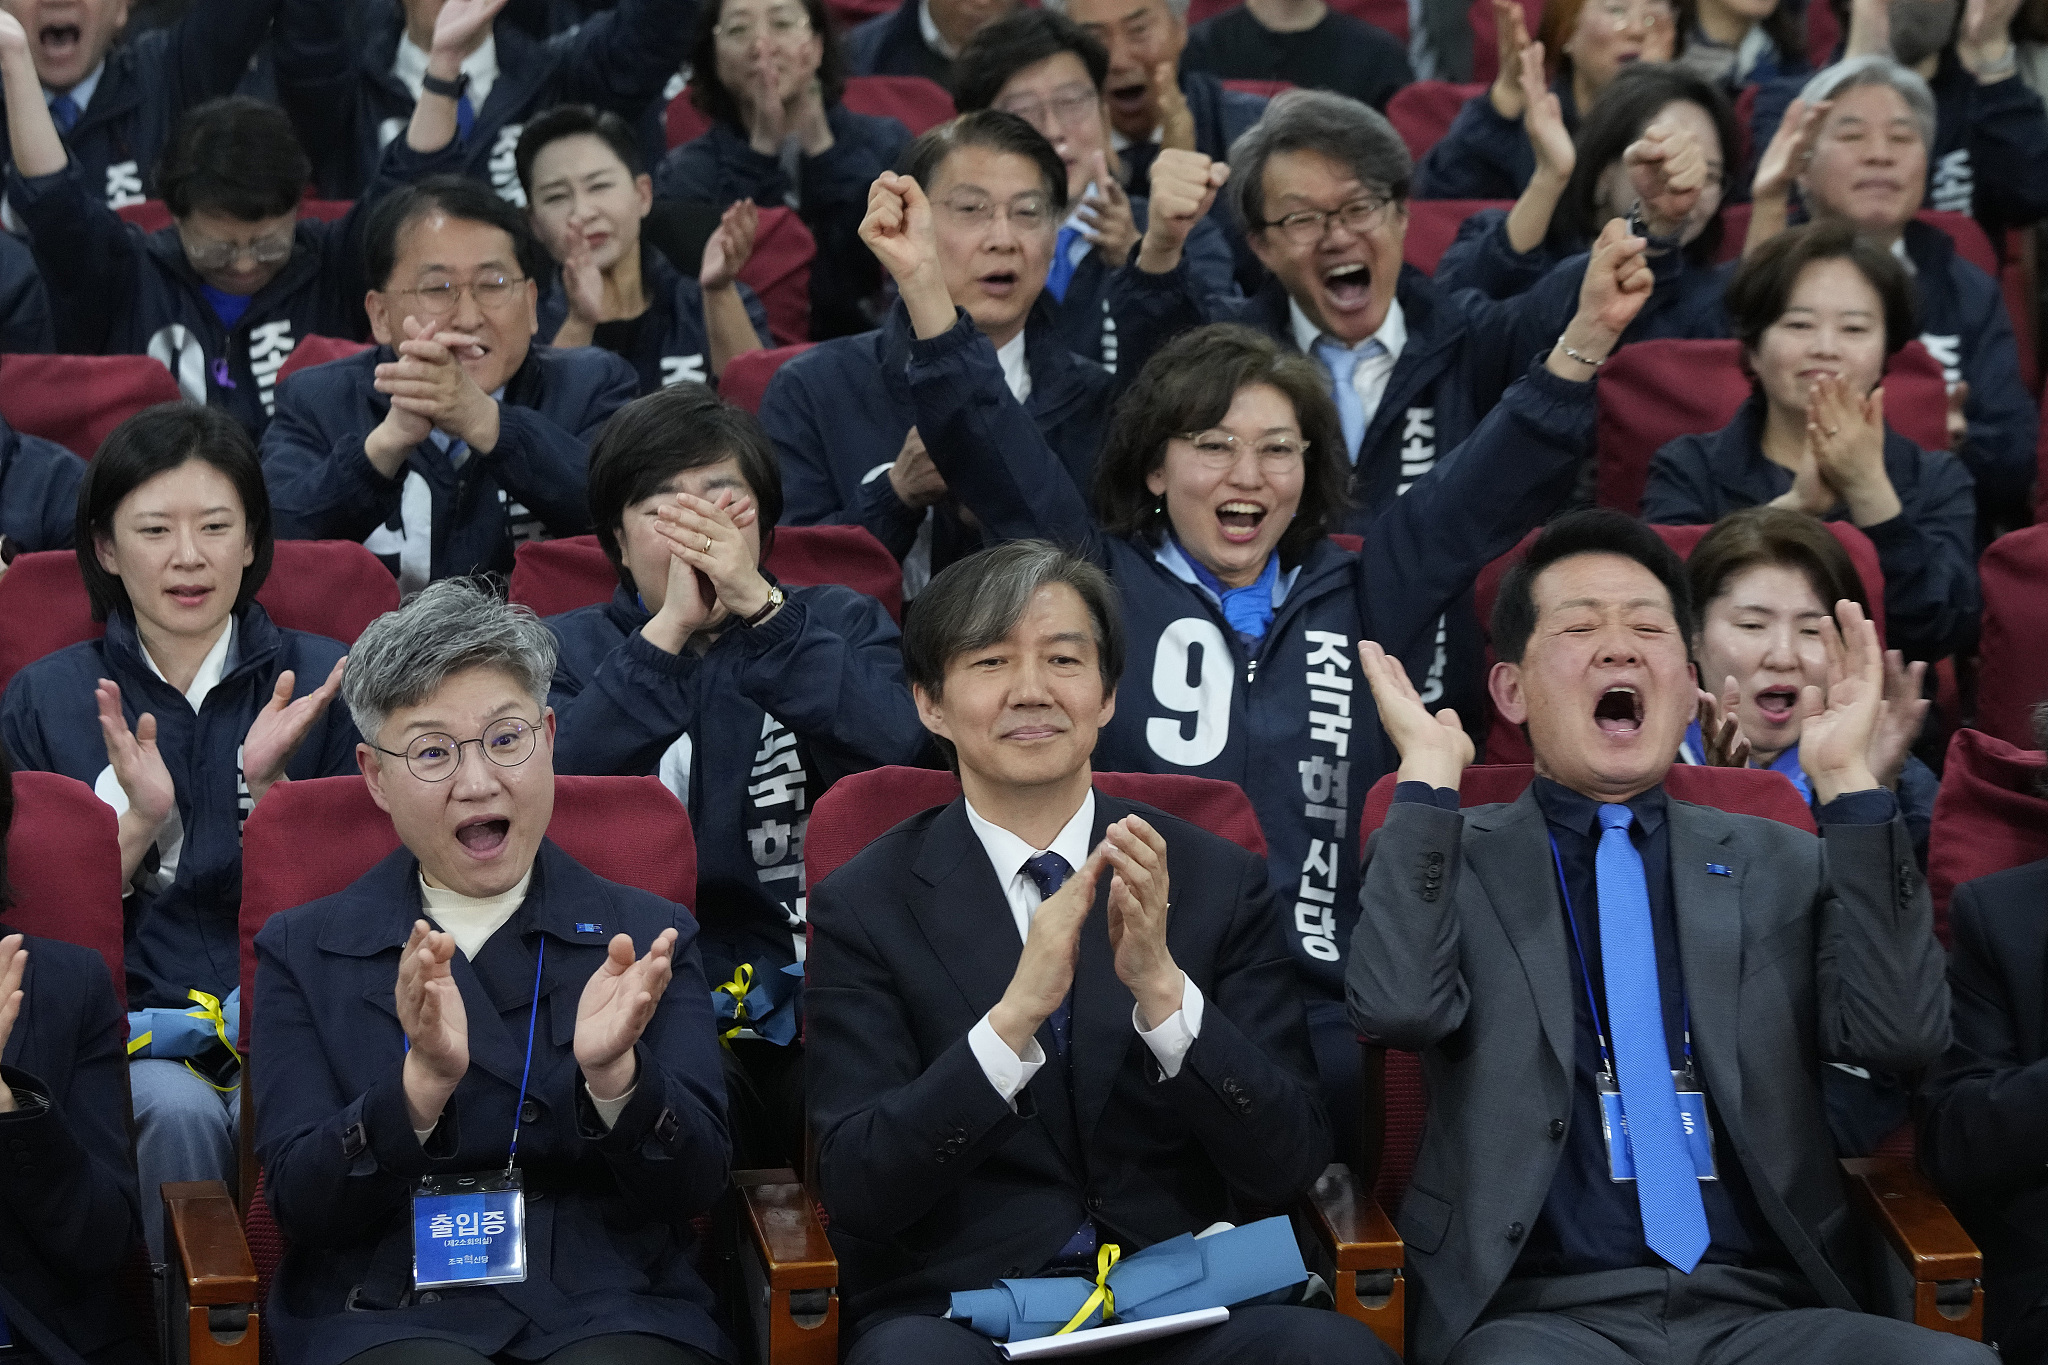 韩国国会议员选举在野党阵营获压倒性胜利,尹锡悦或提早变跛鸭总统